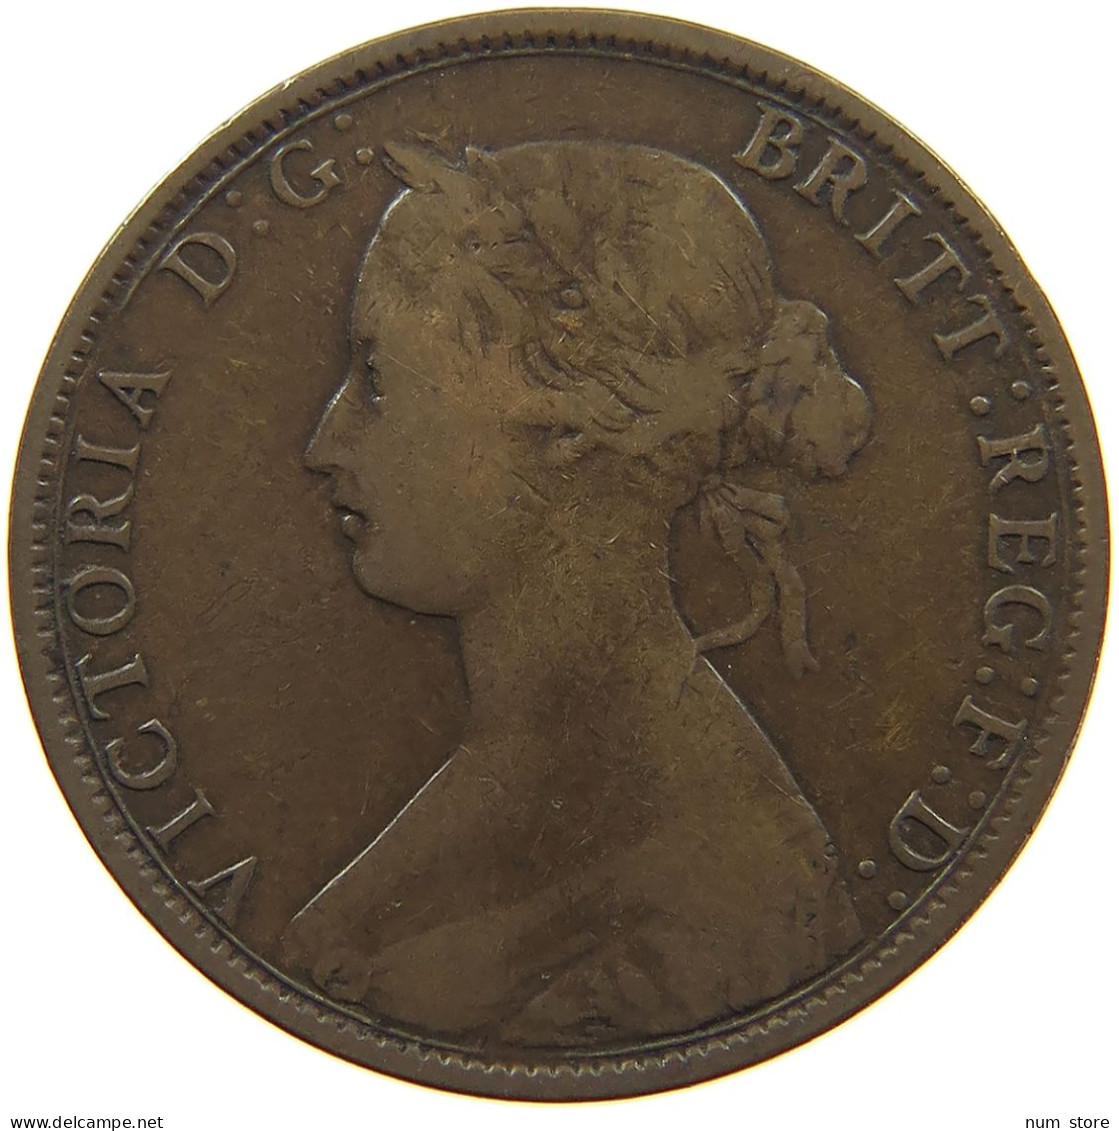 GREAT BRITAIN HALFPENNY 1862 Victoria 1837-1901 #c061 0021 - C. 1/2 Penny